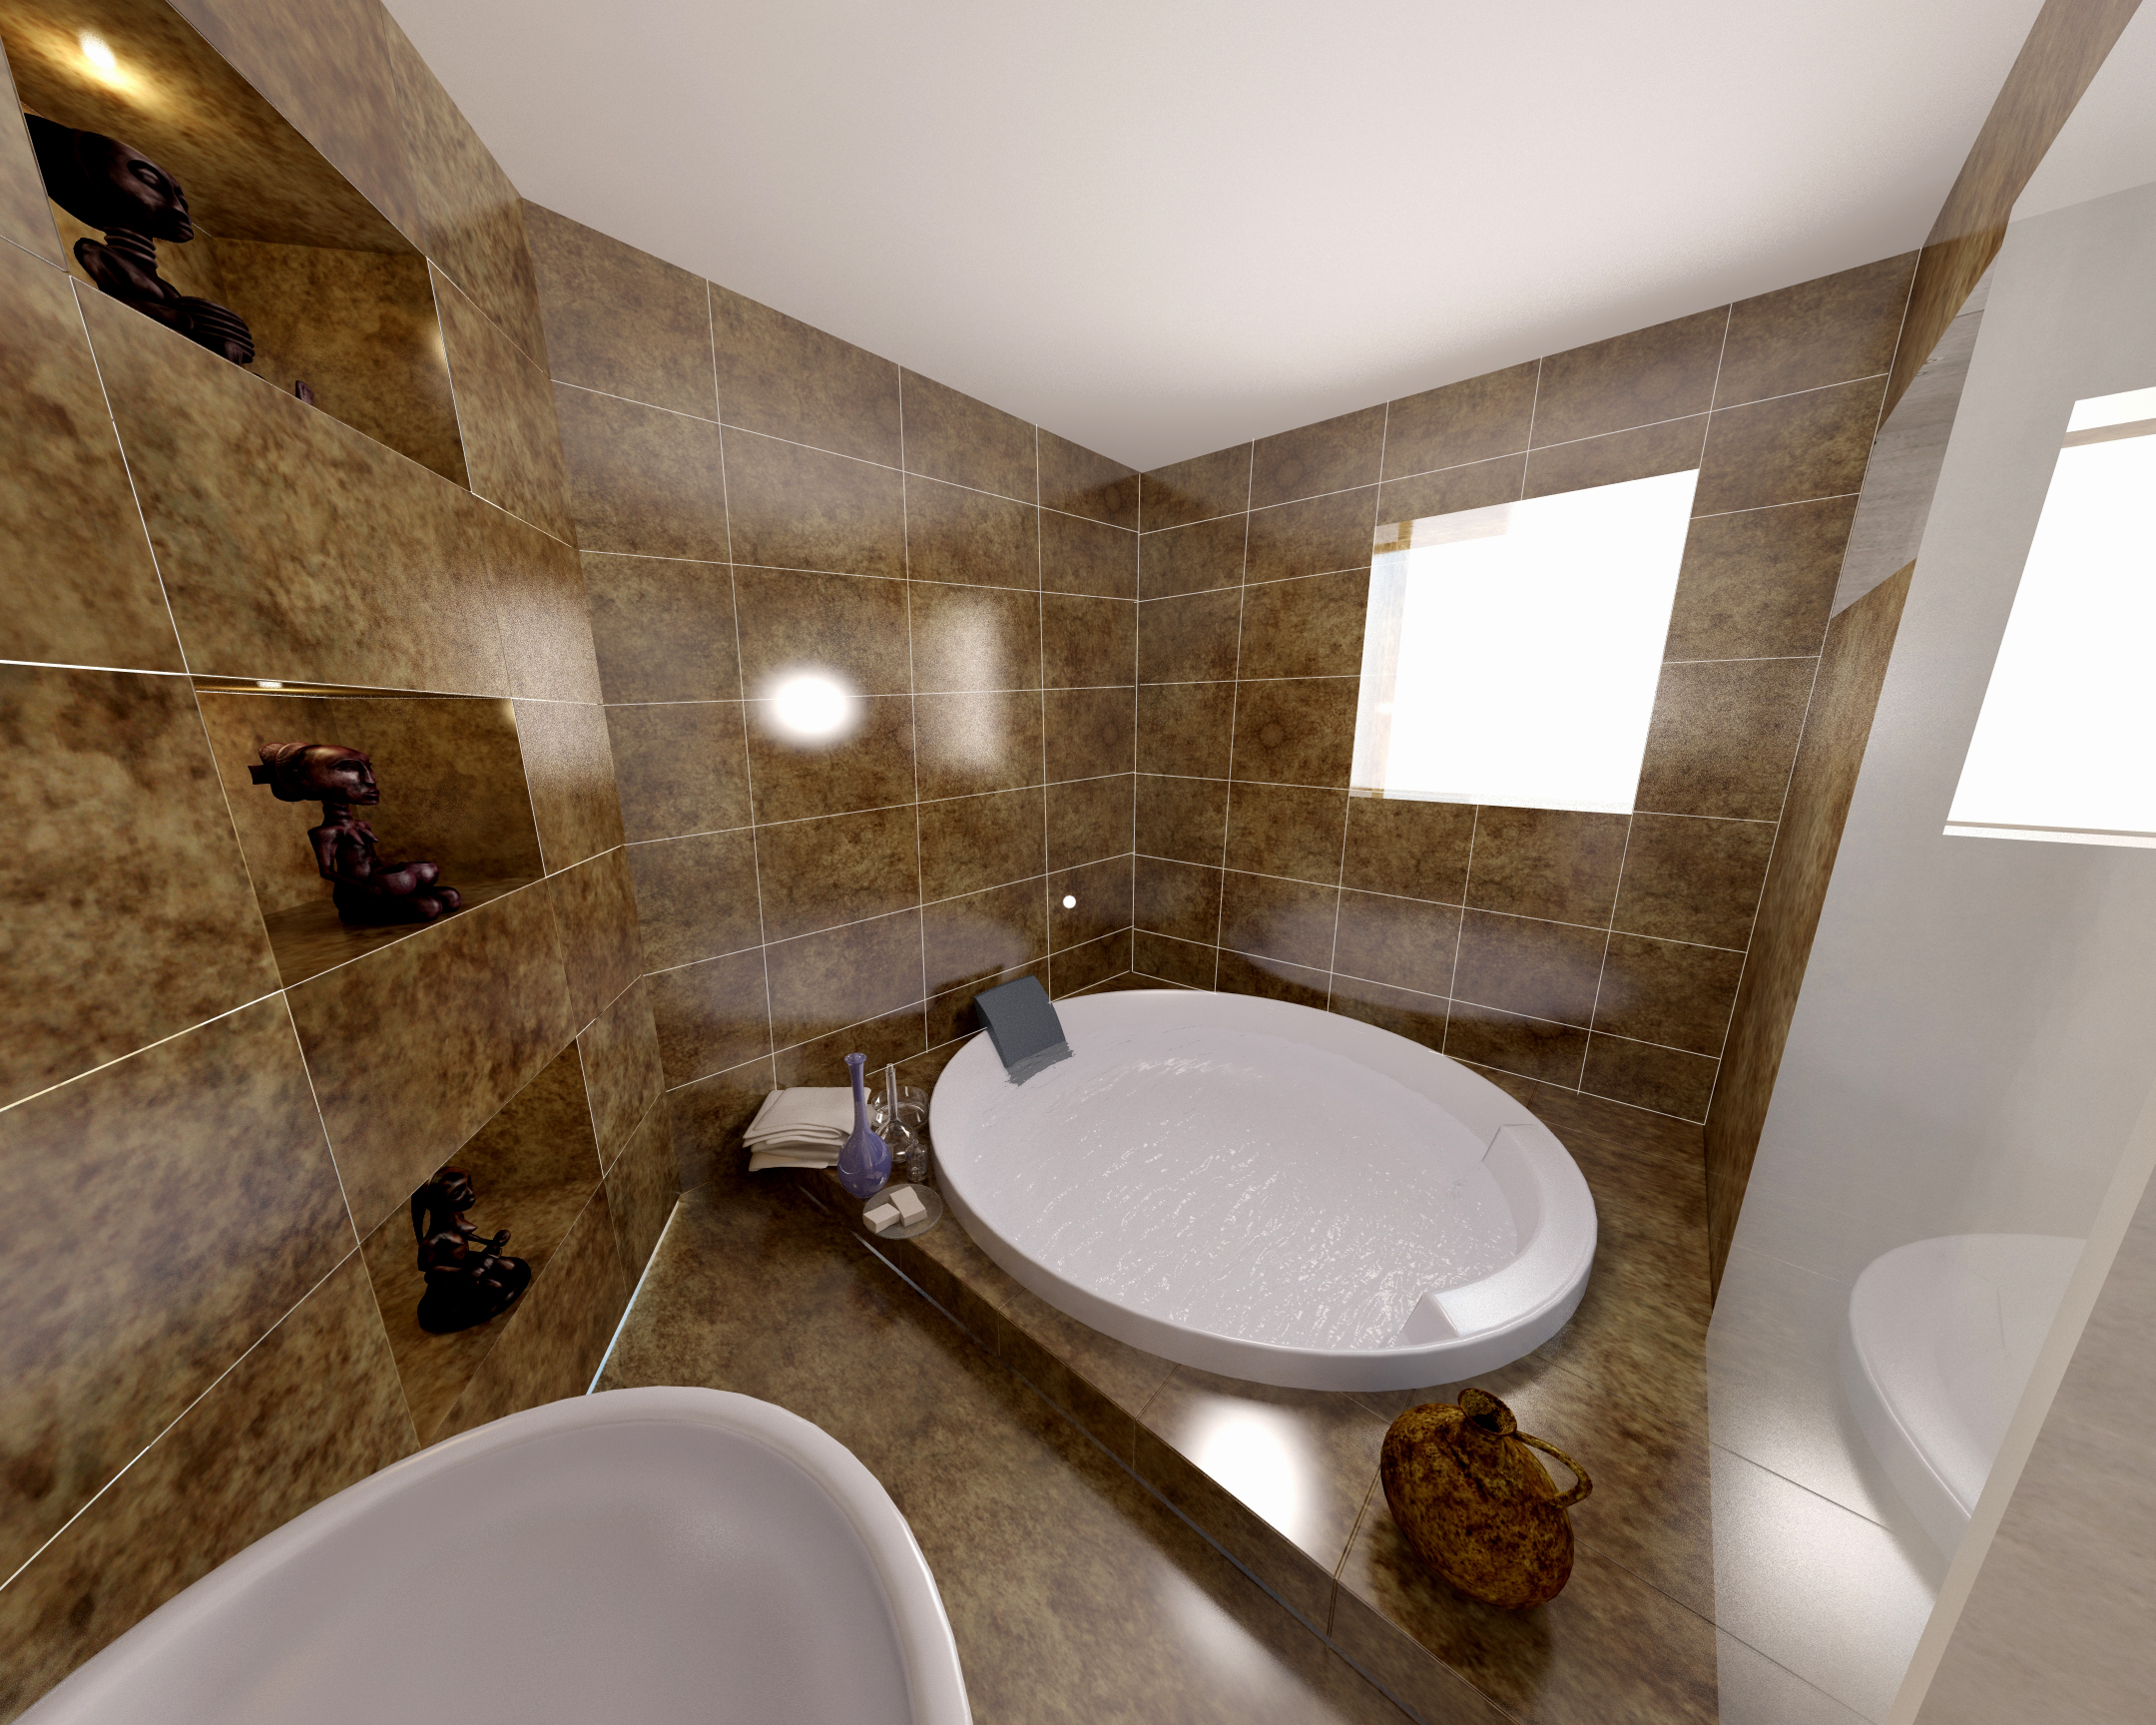 Fürdőszoba - látványterv / Bath room- architectural visualization